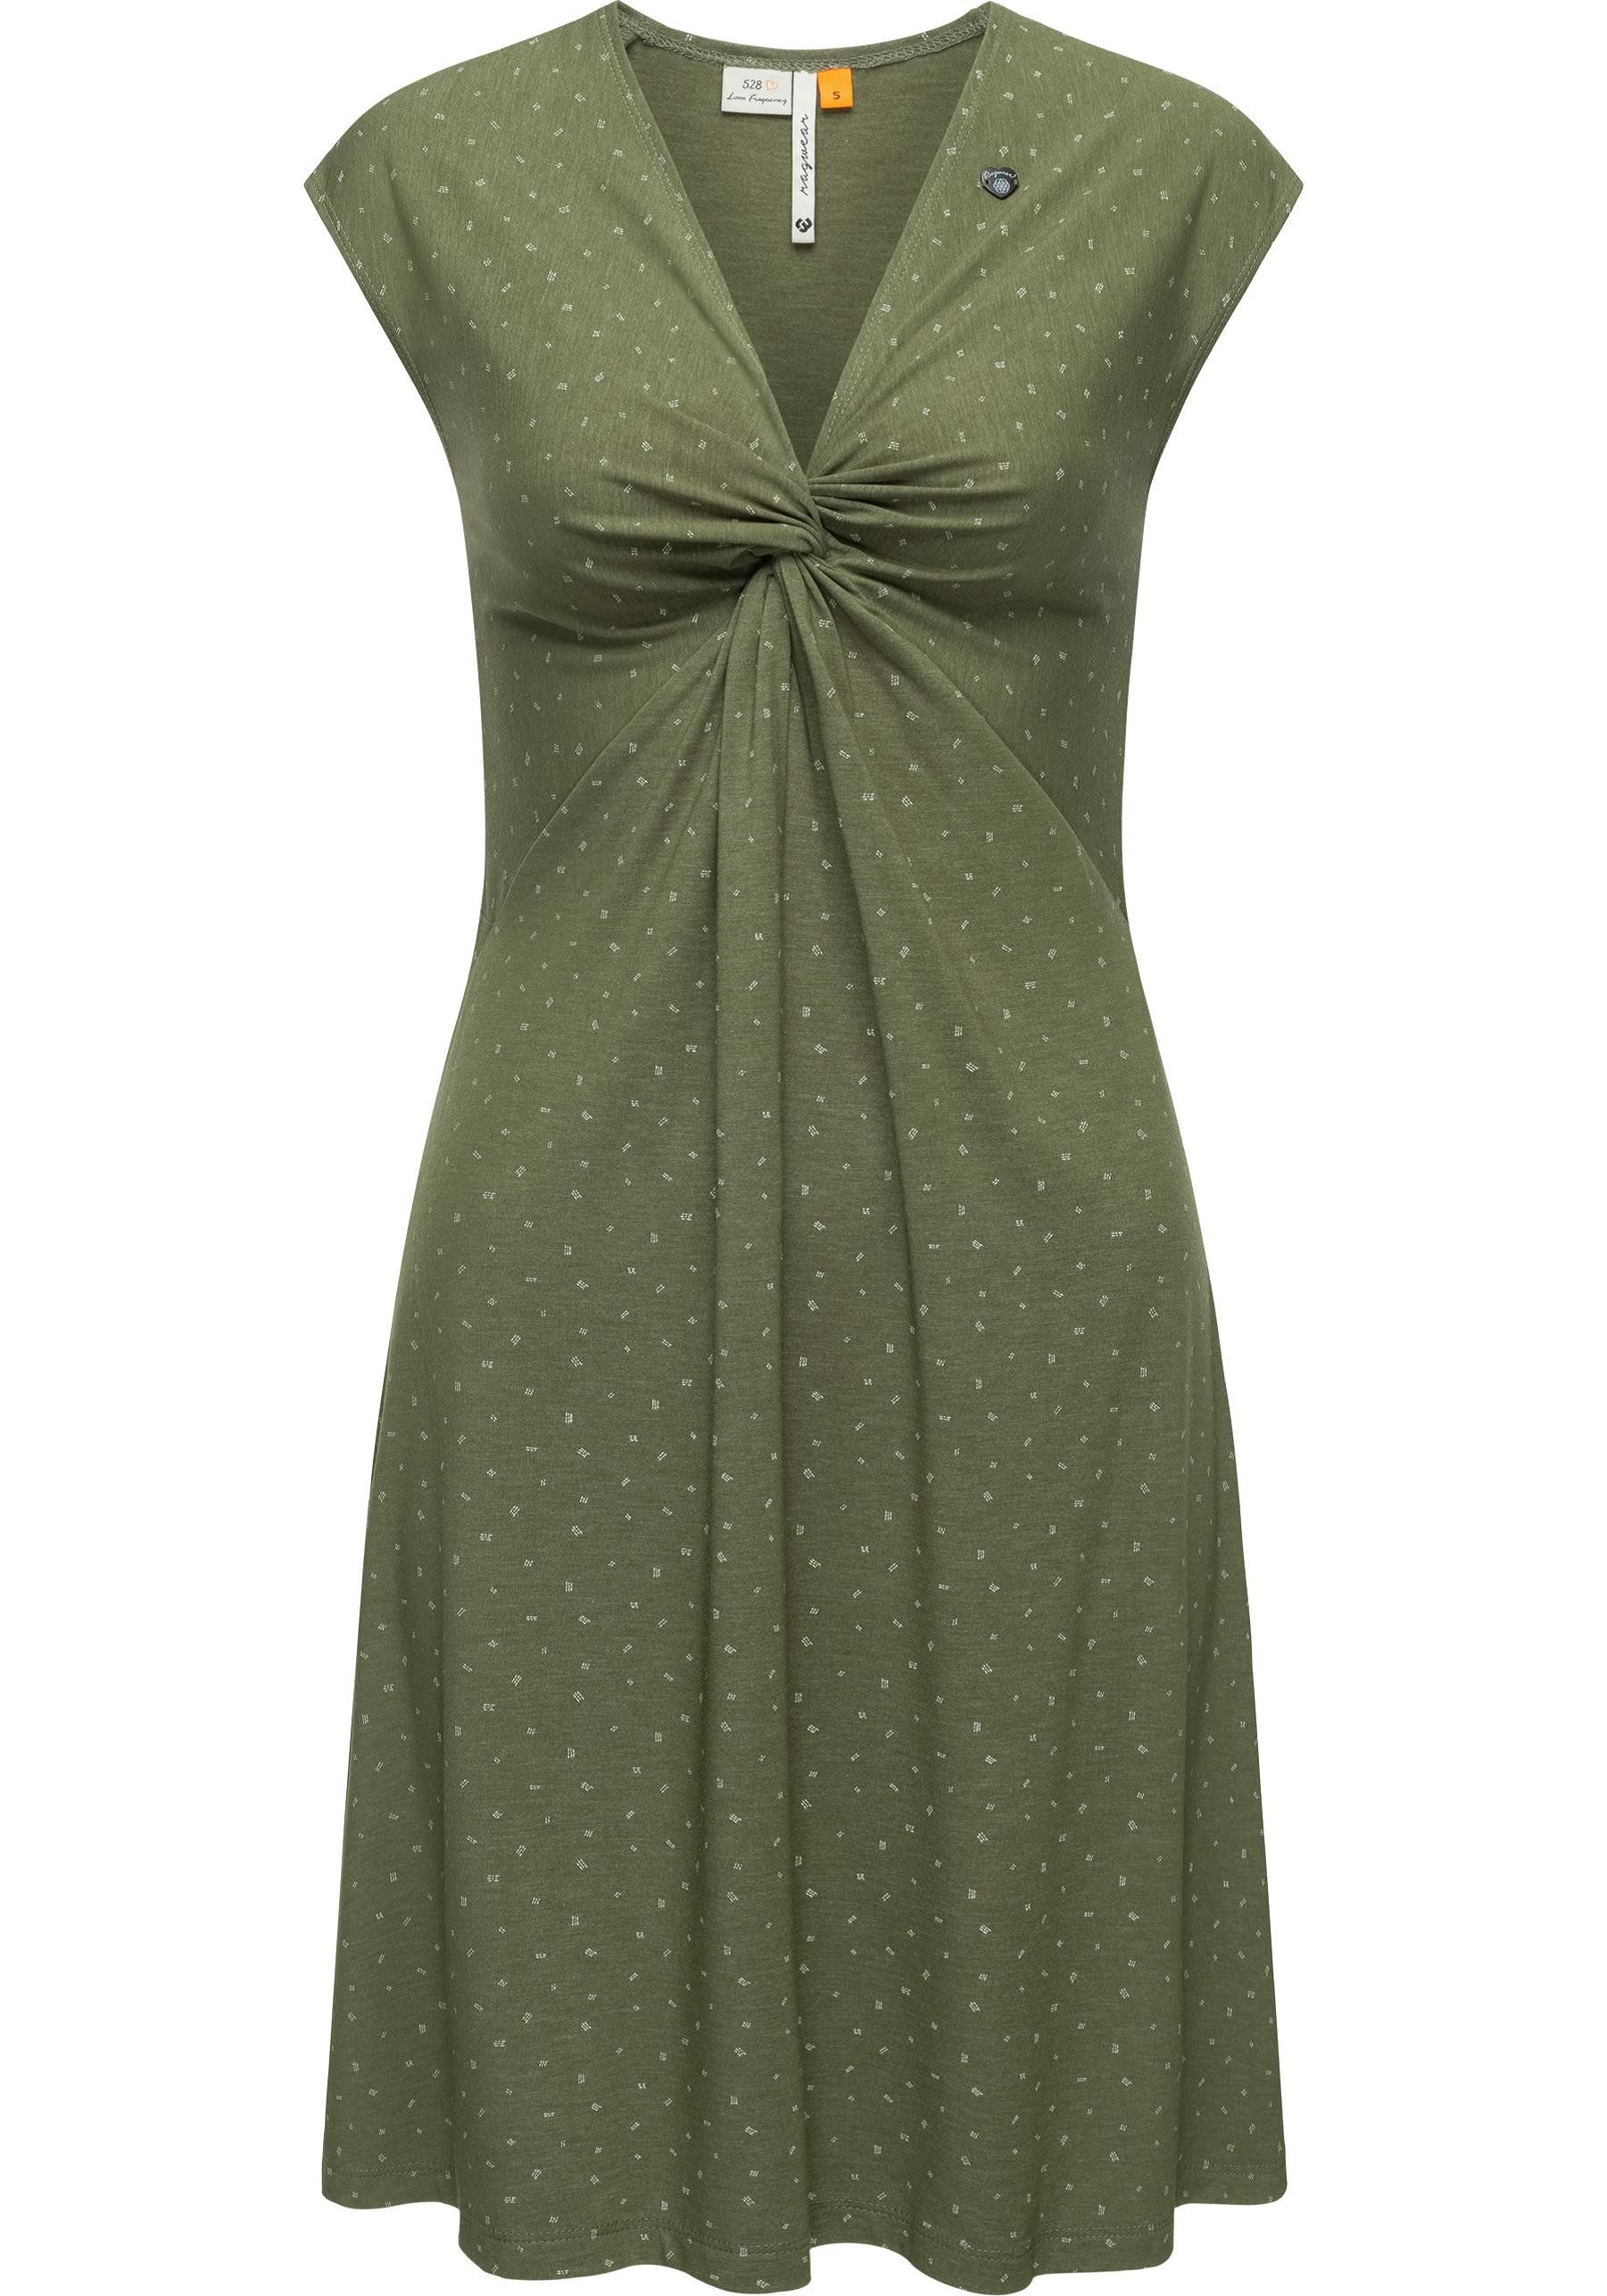 Ragwear Wickelkleid Comfrey stylisches Sommerkleid mit tiefem V-Ausschnitt